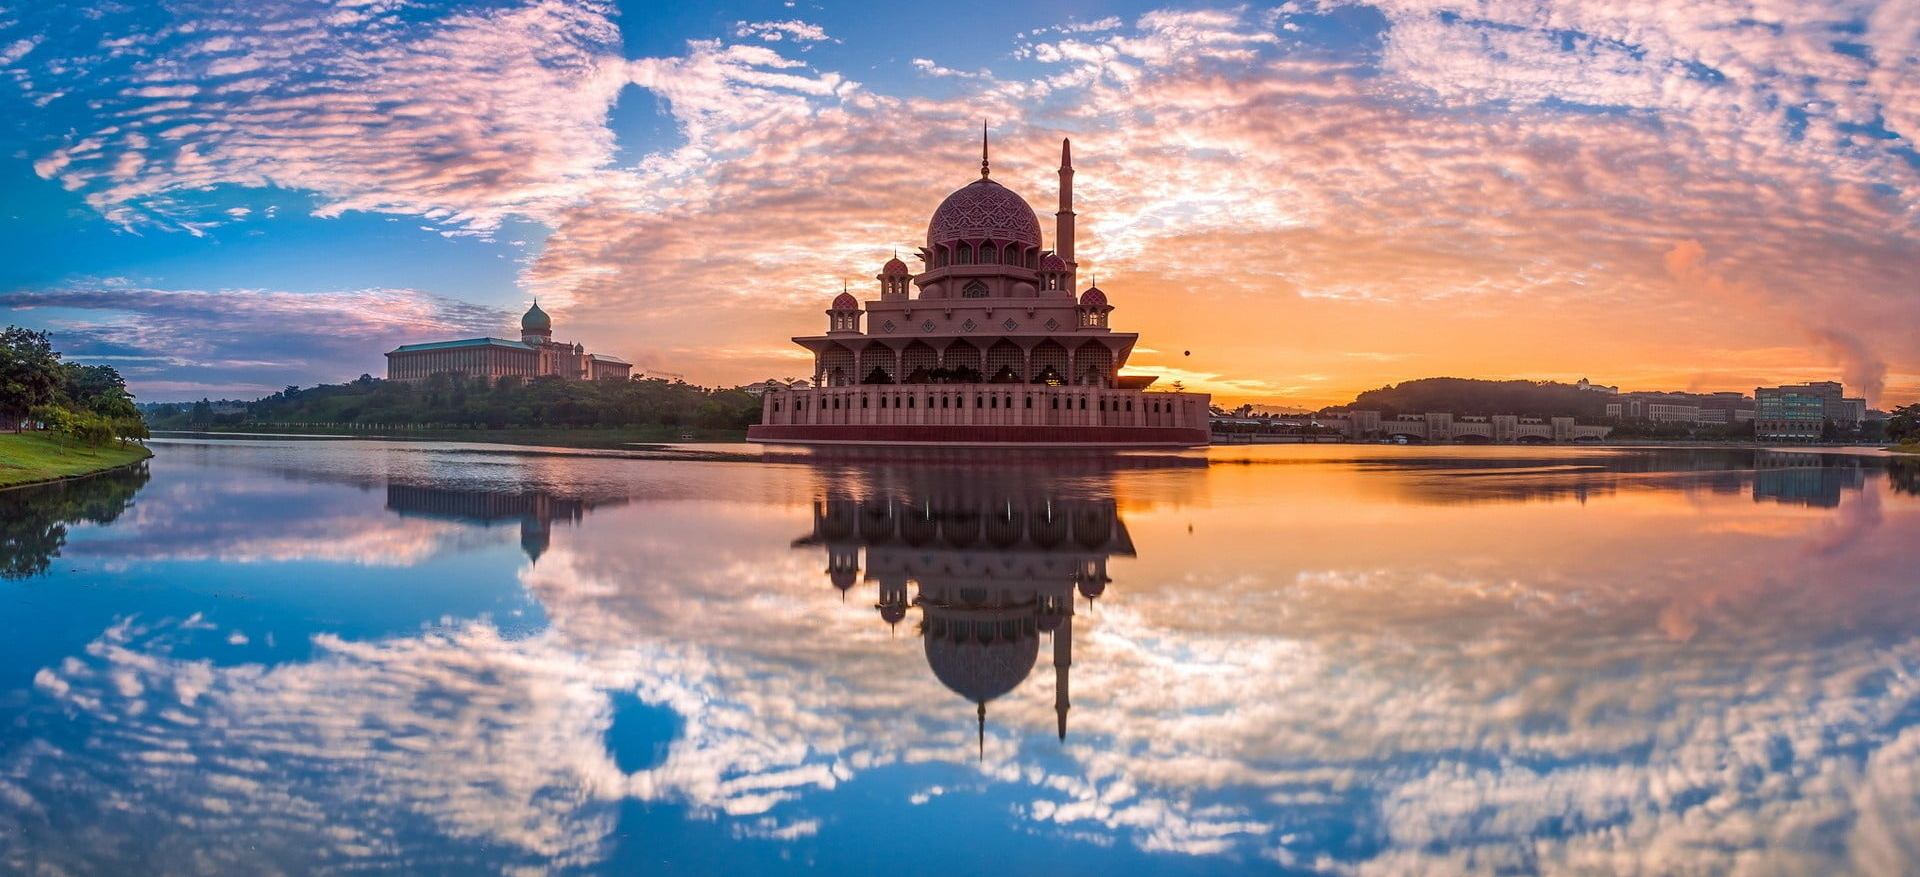 2 июня - вебинар - "Открой Малайзию по-новому"